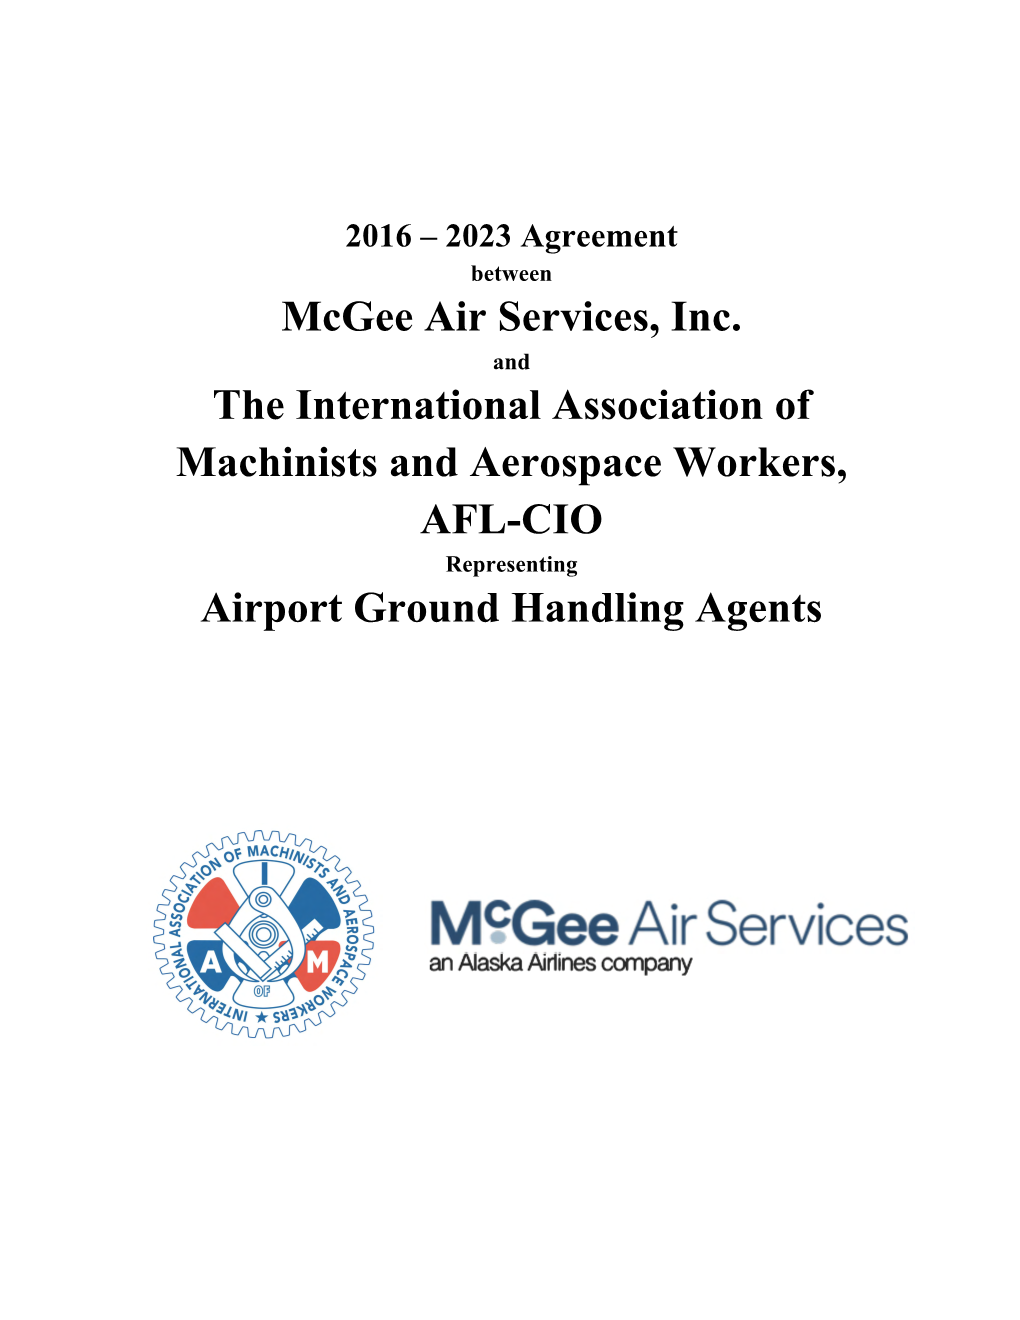 Mcgee Air Services, Inc